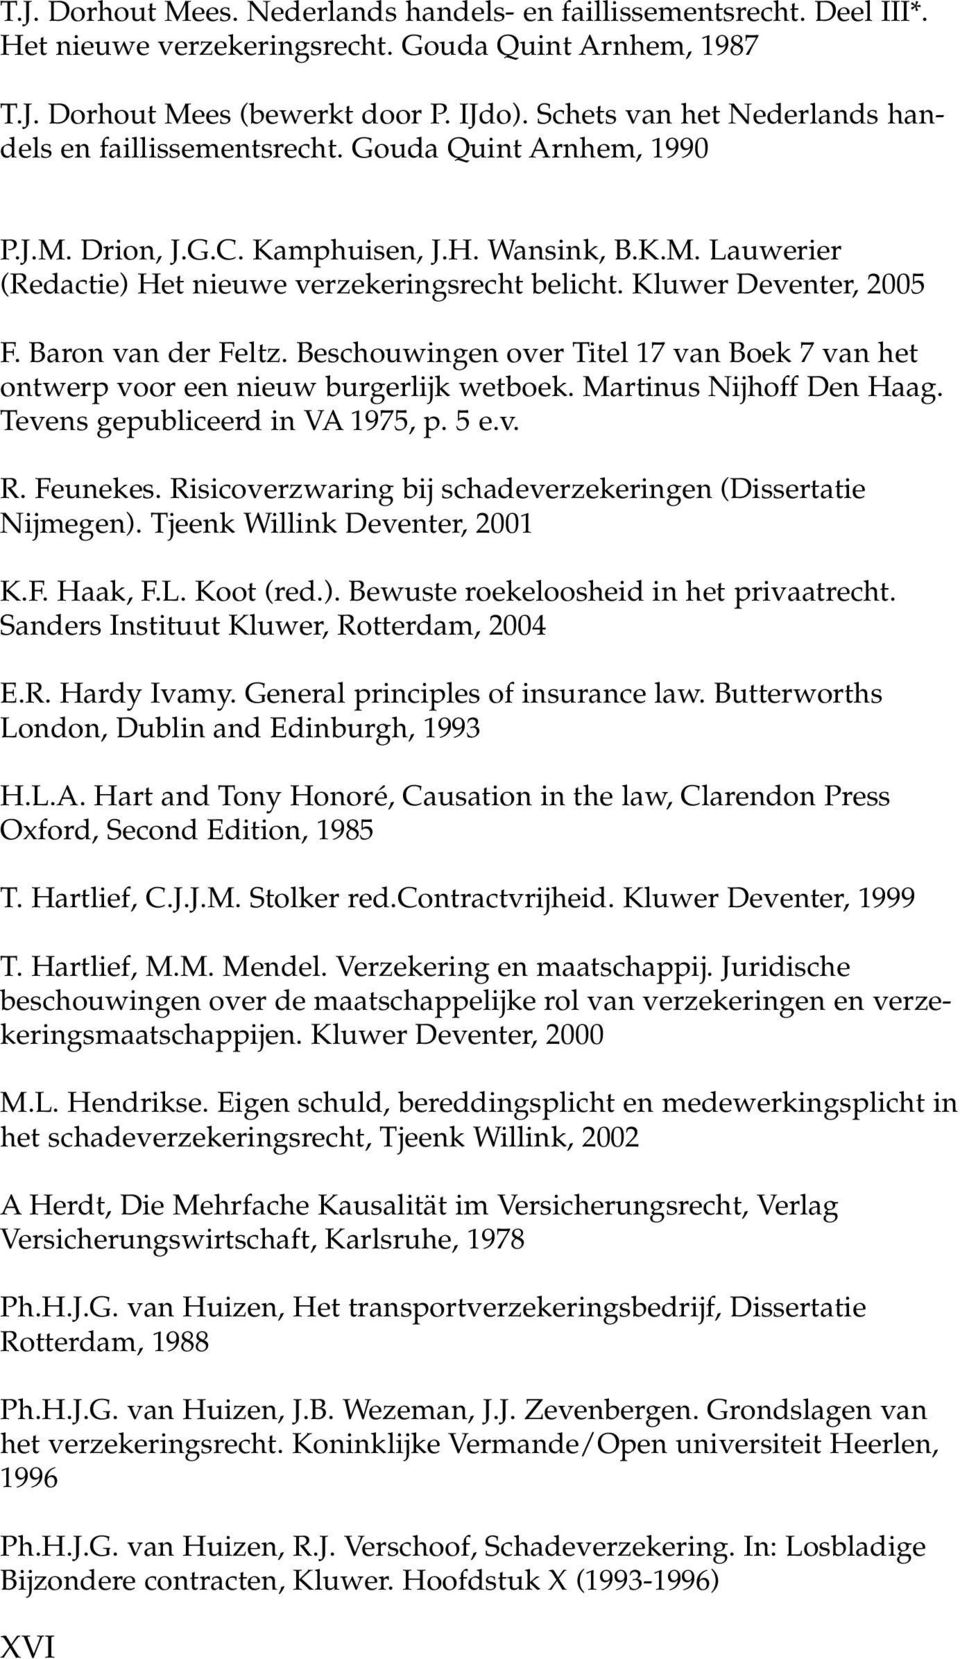 Kluwer Deventer, 2005 F. Baron van der Feltz. Beschouwingen over Titel 17 van Boek 7 van het ontwerp voor een nieuw burgerlijk wetboek. Martinus Nijhoff Den Haag. Tevens gepubliceerd in VA 1975, p.